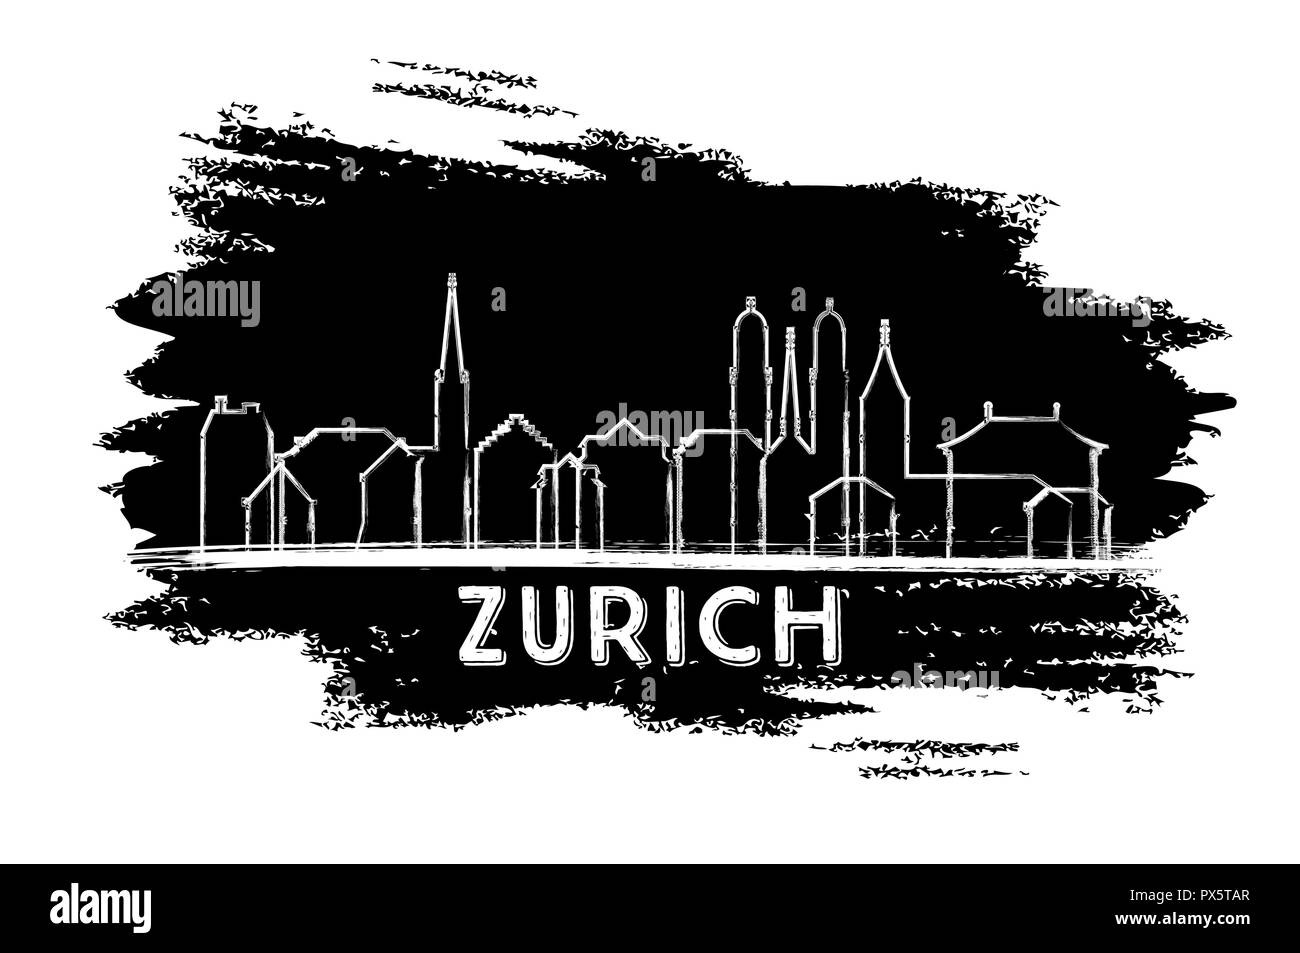 Zurich Suisse Ville Silhouette. Croquis dessinés à la main. Vector Illustration. Les voyages d'affaires et tourisme Concept avec l'architecture historique. Illustration de Vecteur